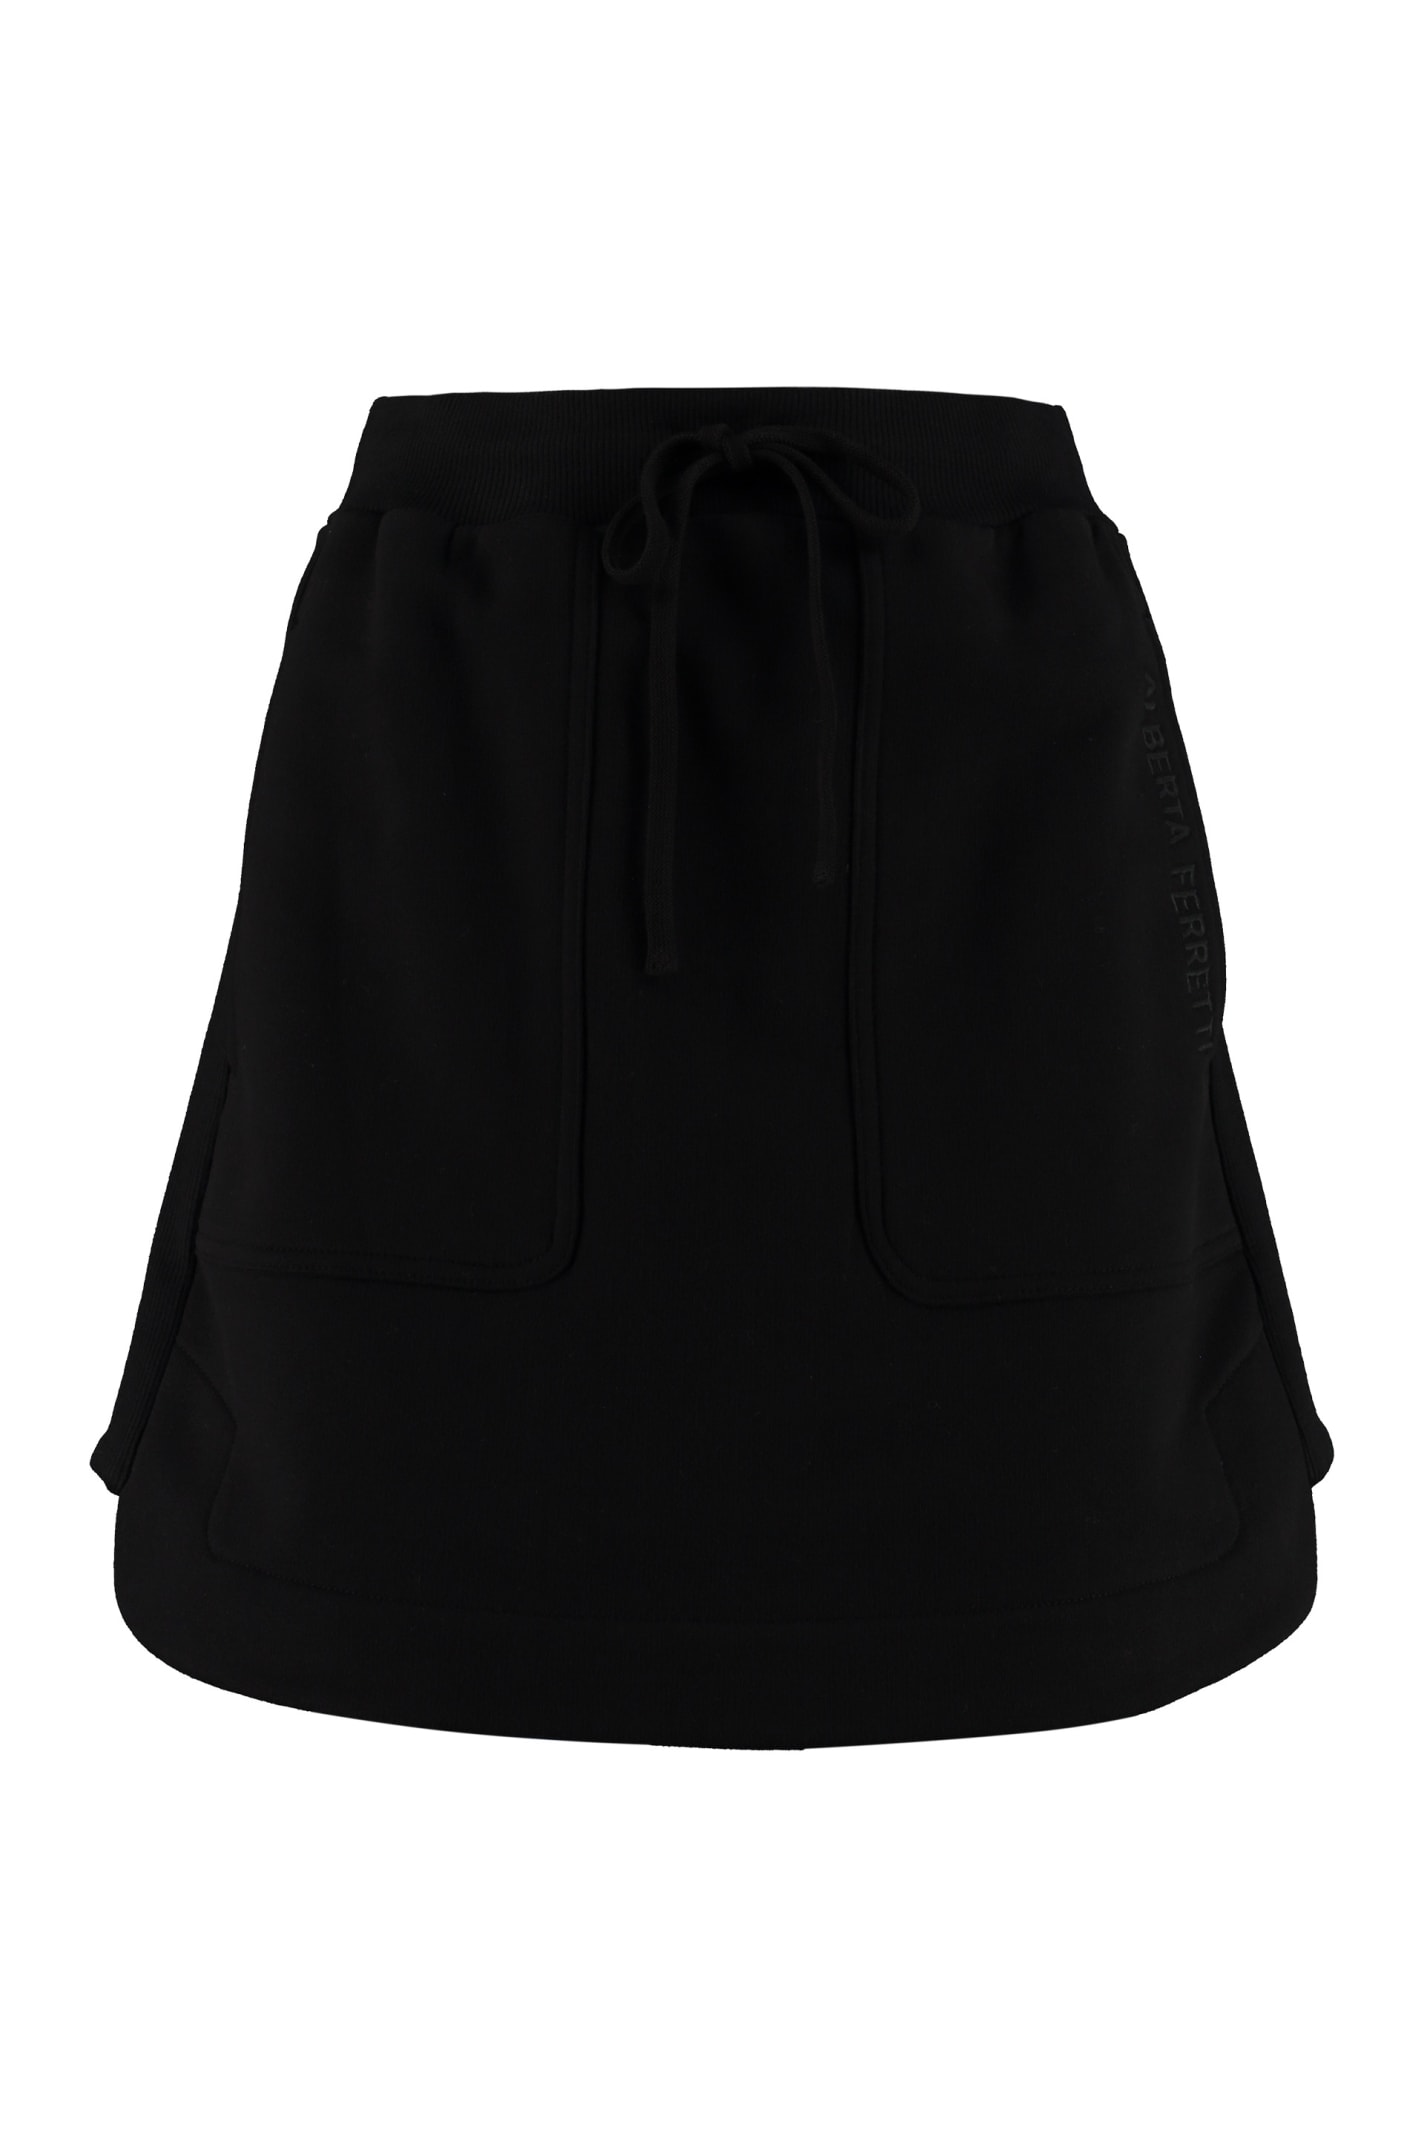 Alberta Ferretti Mini-Skirts | italist, ALWAYS LIKE A SALE